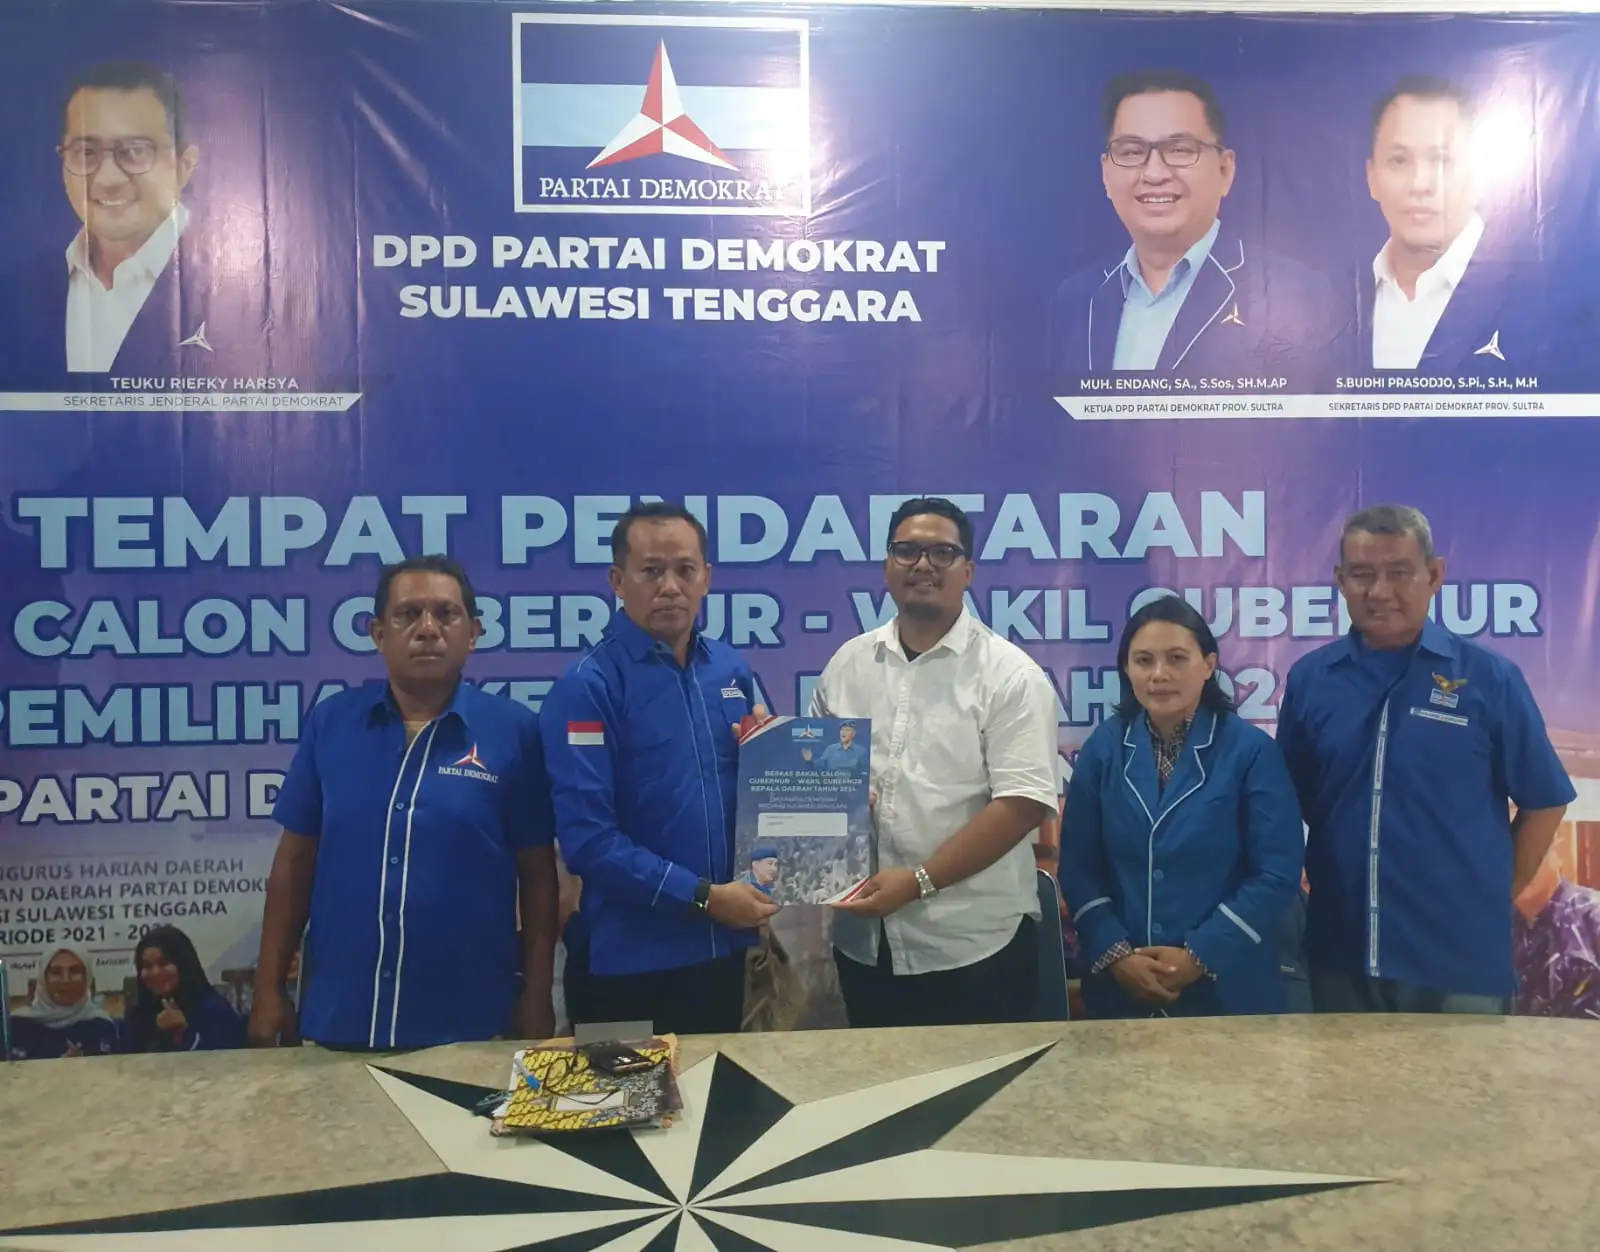 Dapat Dukungan Masyarakat, Hugua Daftar Cagub Sulawesi Tenggara di Partai Demokrat